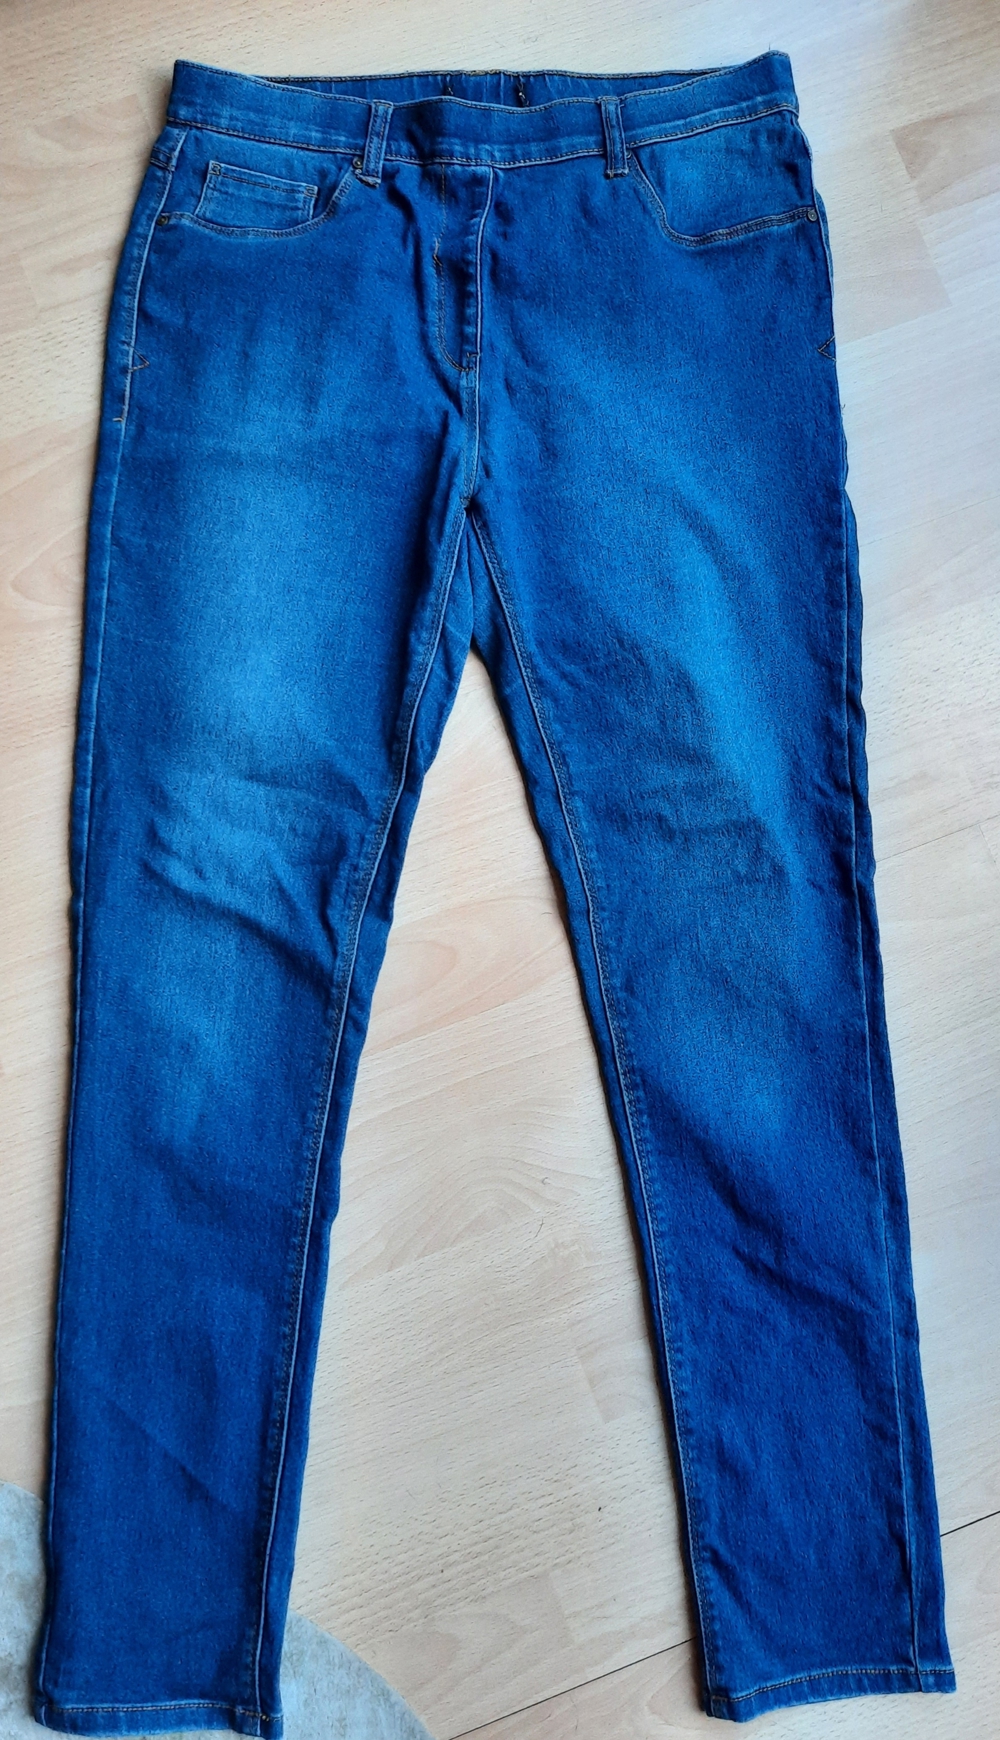 Schöne Jeans Jeggins Gr.152/38 von C&A, sehr guter Zustand, günstig und komfortable